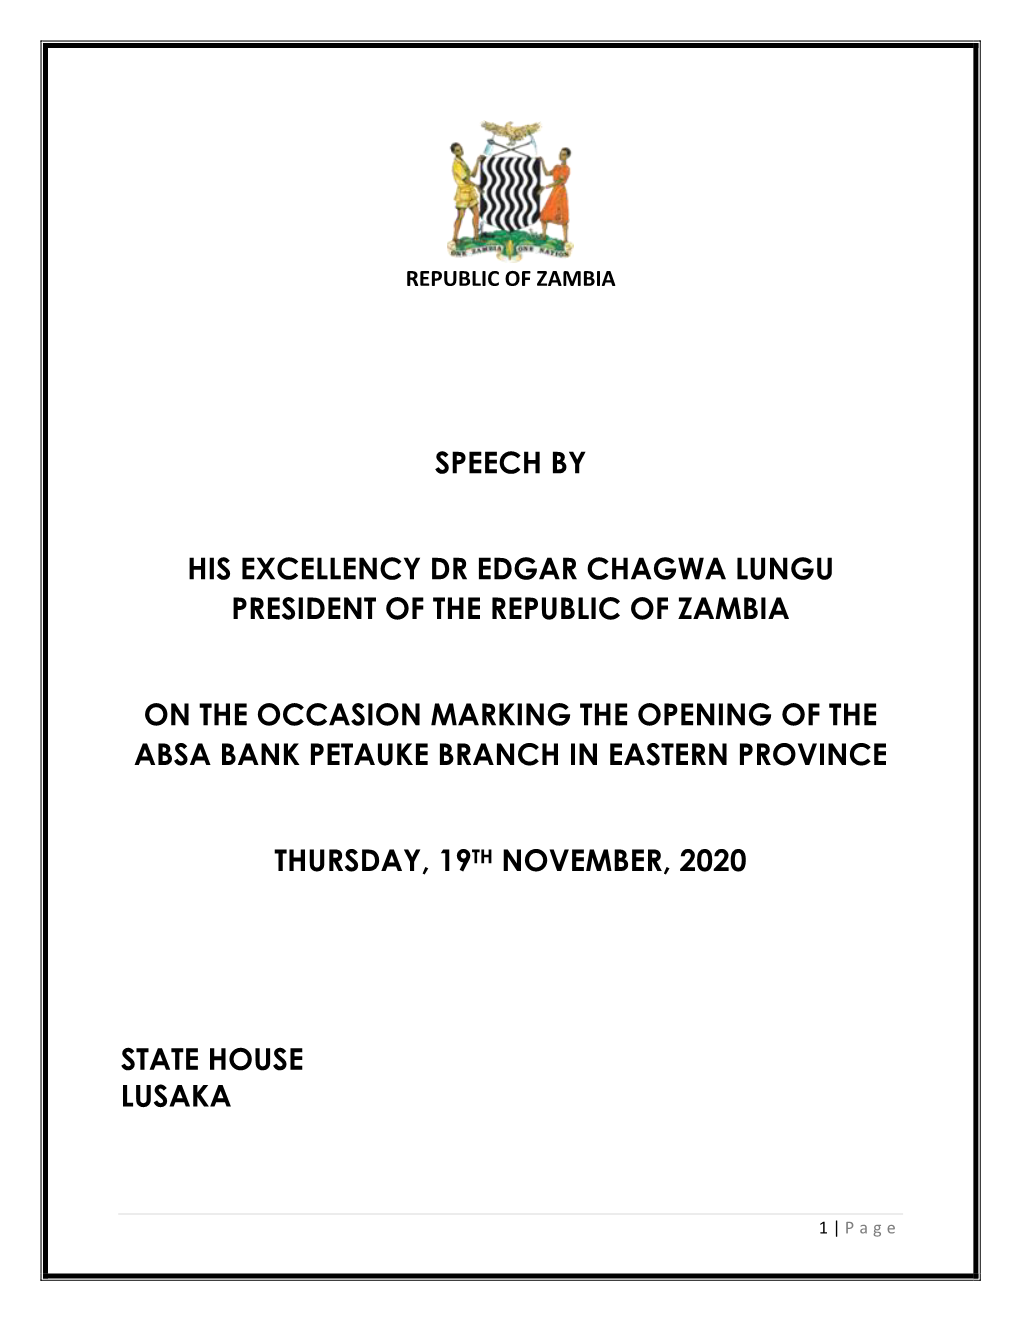 Speech by His Excellency Dr Edgar Chagwa Lungu